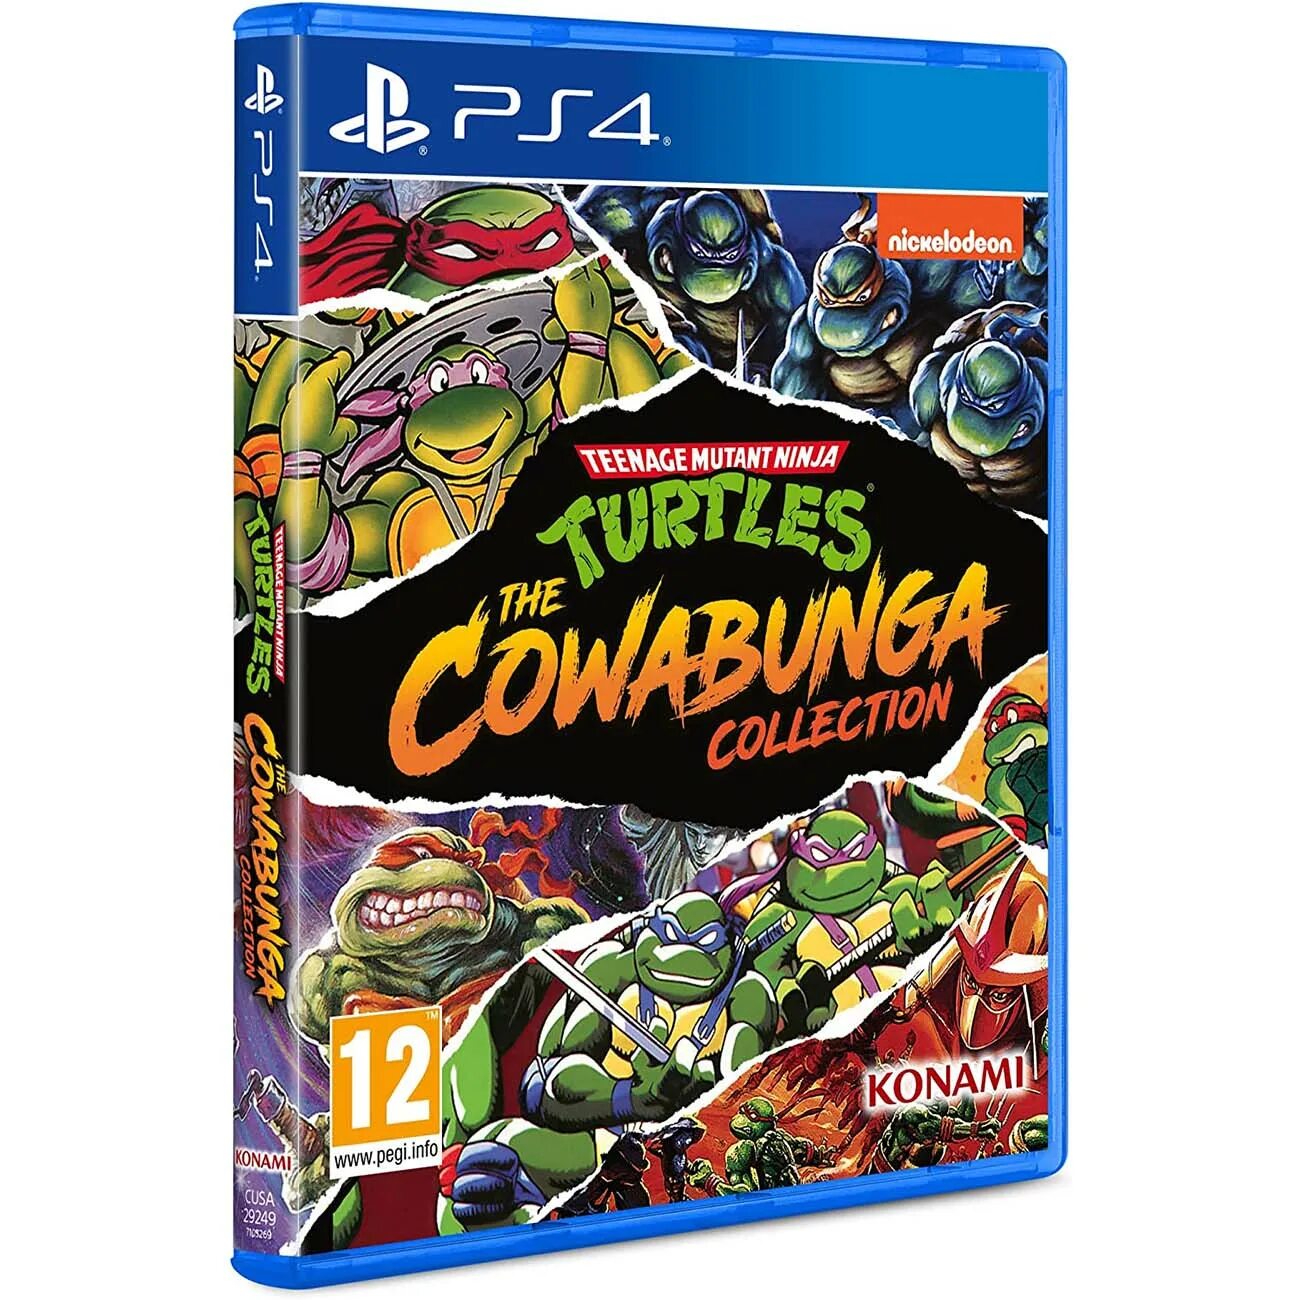 Mutant ninja turtles cowabunga collection. TMNT Cowabunga collection ps4. Teenage Mutant Ninja Turtles: the Cowabunga collection ps4 & ps5. Черепашки ниндзя ps4. Teenage Mutant Ninja Turtles: Cowabunga collection Nintendo Switch.